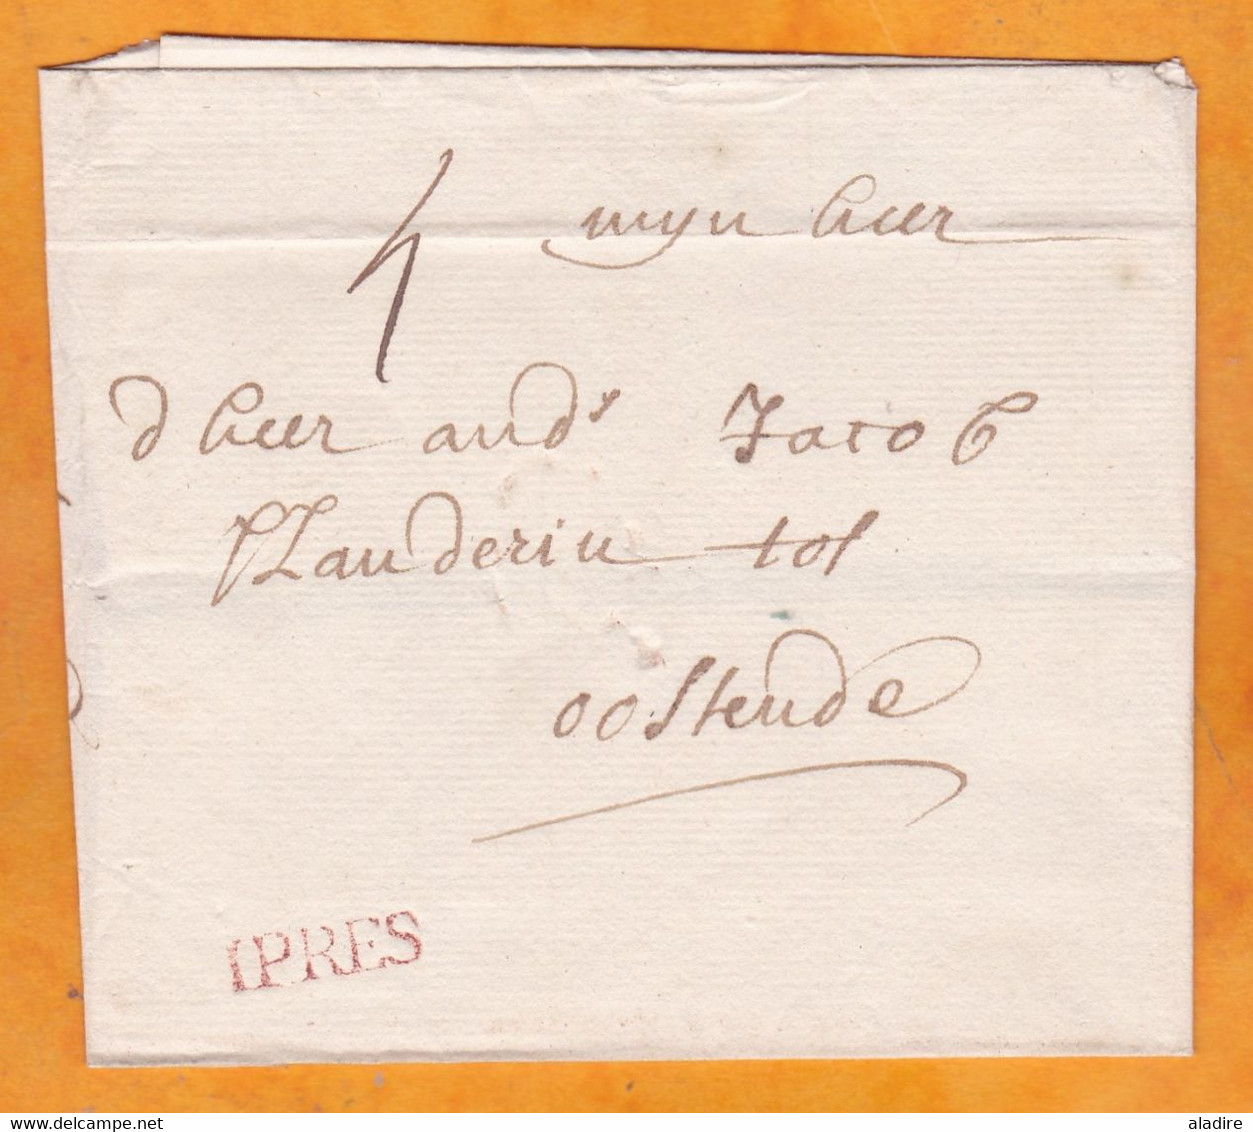 1760 - Marque Postale IPRES En Rouge Sur Enveloppe De YPRES, Ieper, Pays Bas Autrichiens Vers OOSTENDE, Ostende - 1714-1794 (Paises Bajos Austriacos)